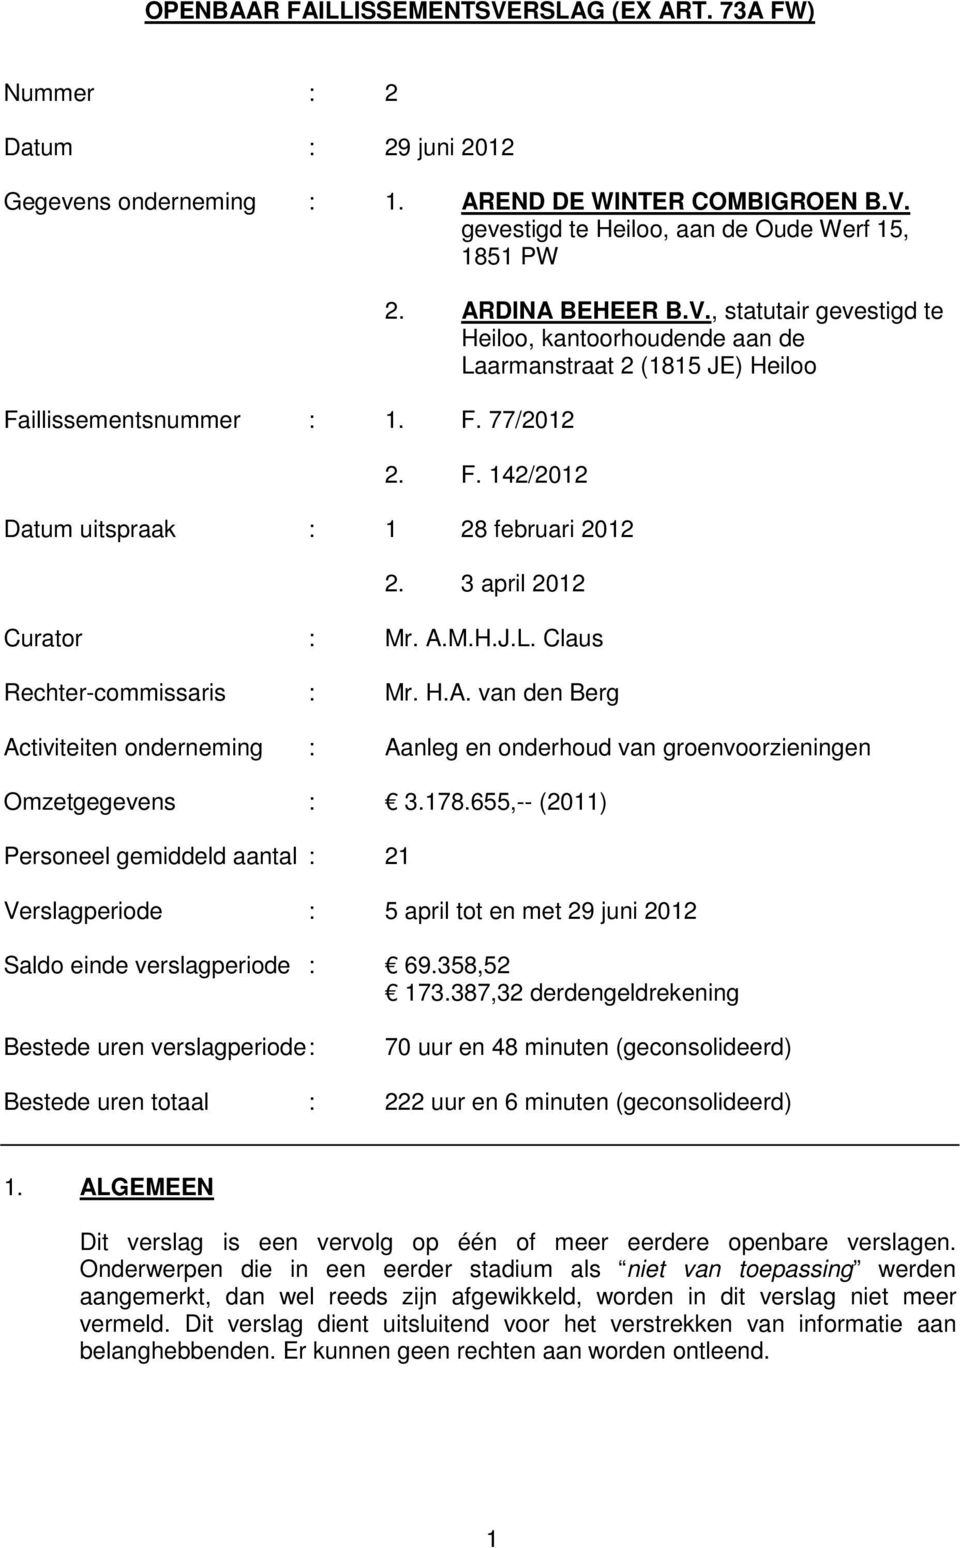 3 april 2012 Curator : Mr. A.M.H.J.L. Claus Rechtercommissaris : Mr. H.A. van den Berg Activiteiten onderneming : Aanleg en onderhoud van groenvoorzieningen Omzetgegevens : 3.178.